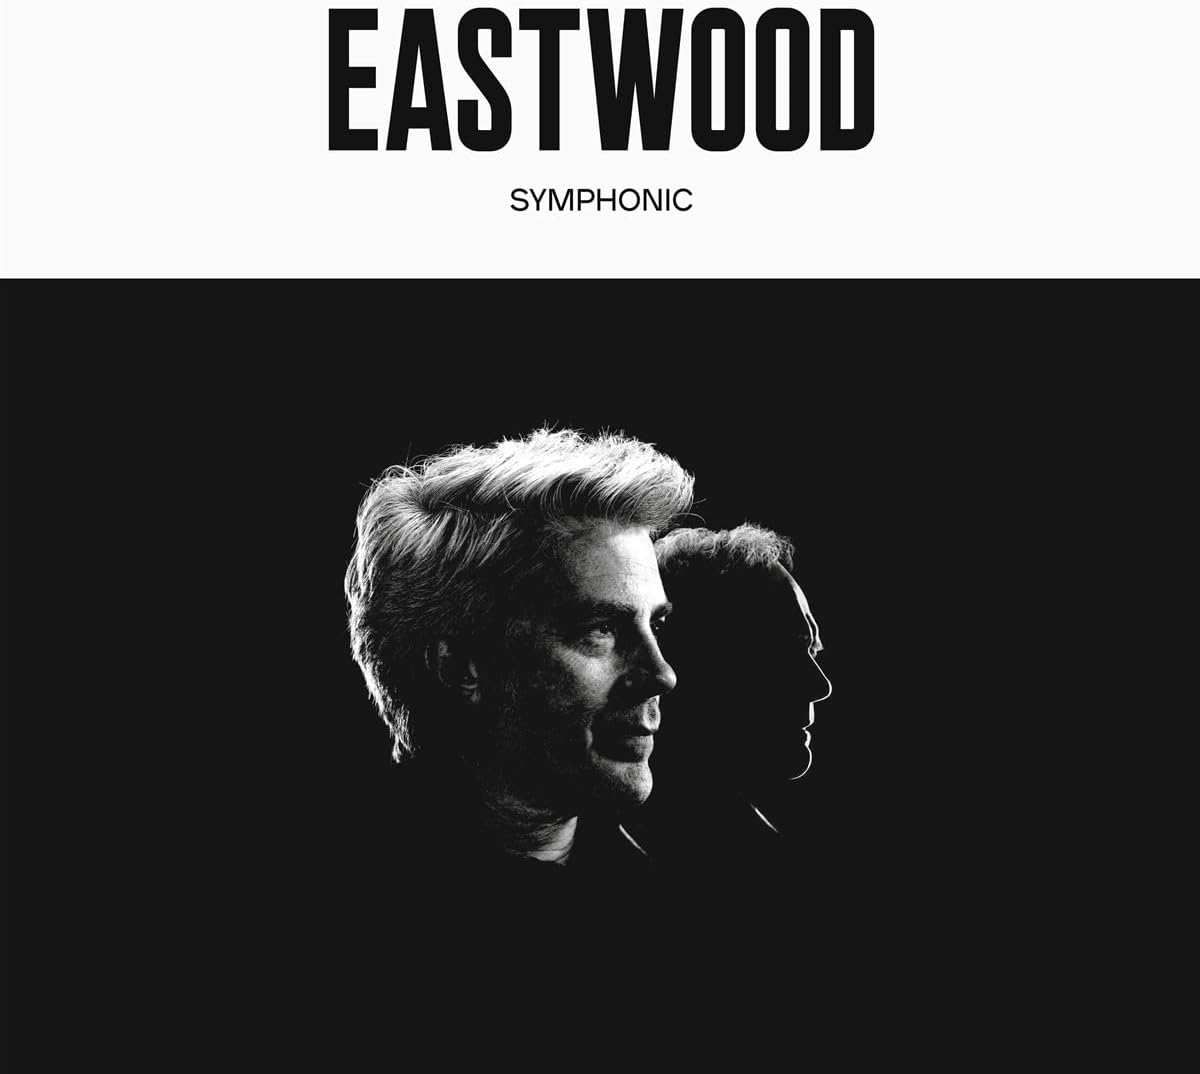 eastwood symphonic